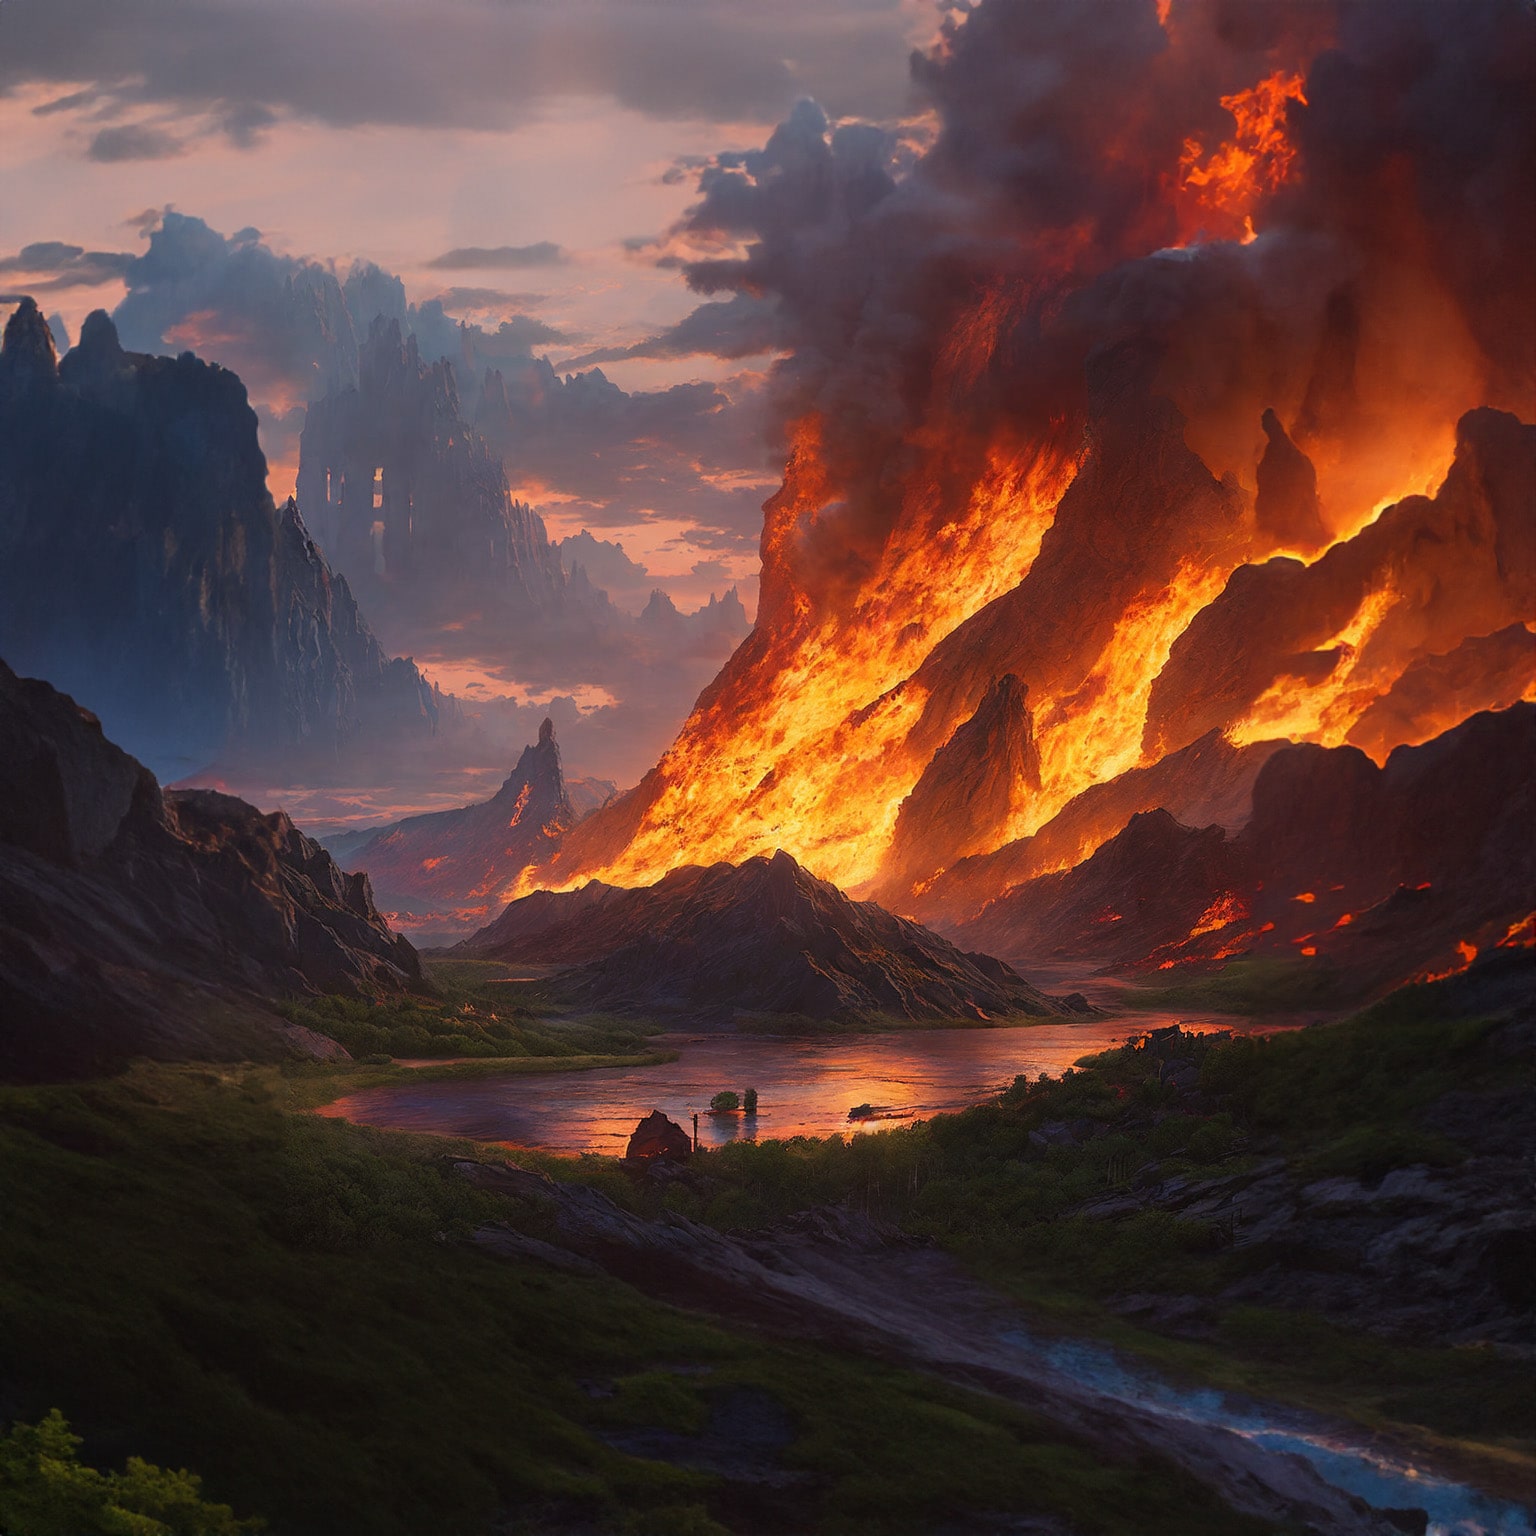 Ein KI Bild von einem brennenden Berg an einem See